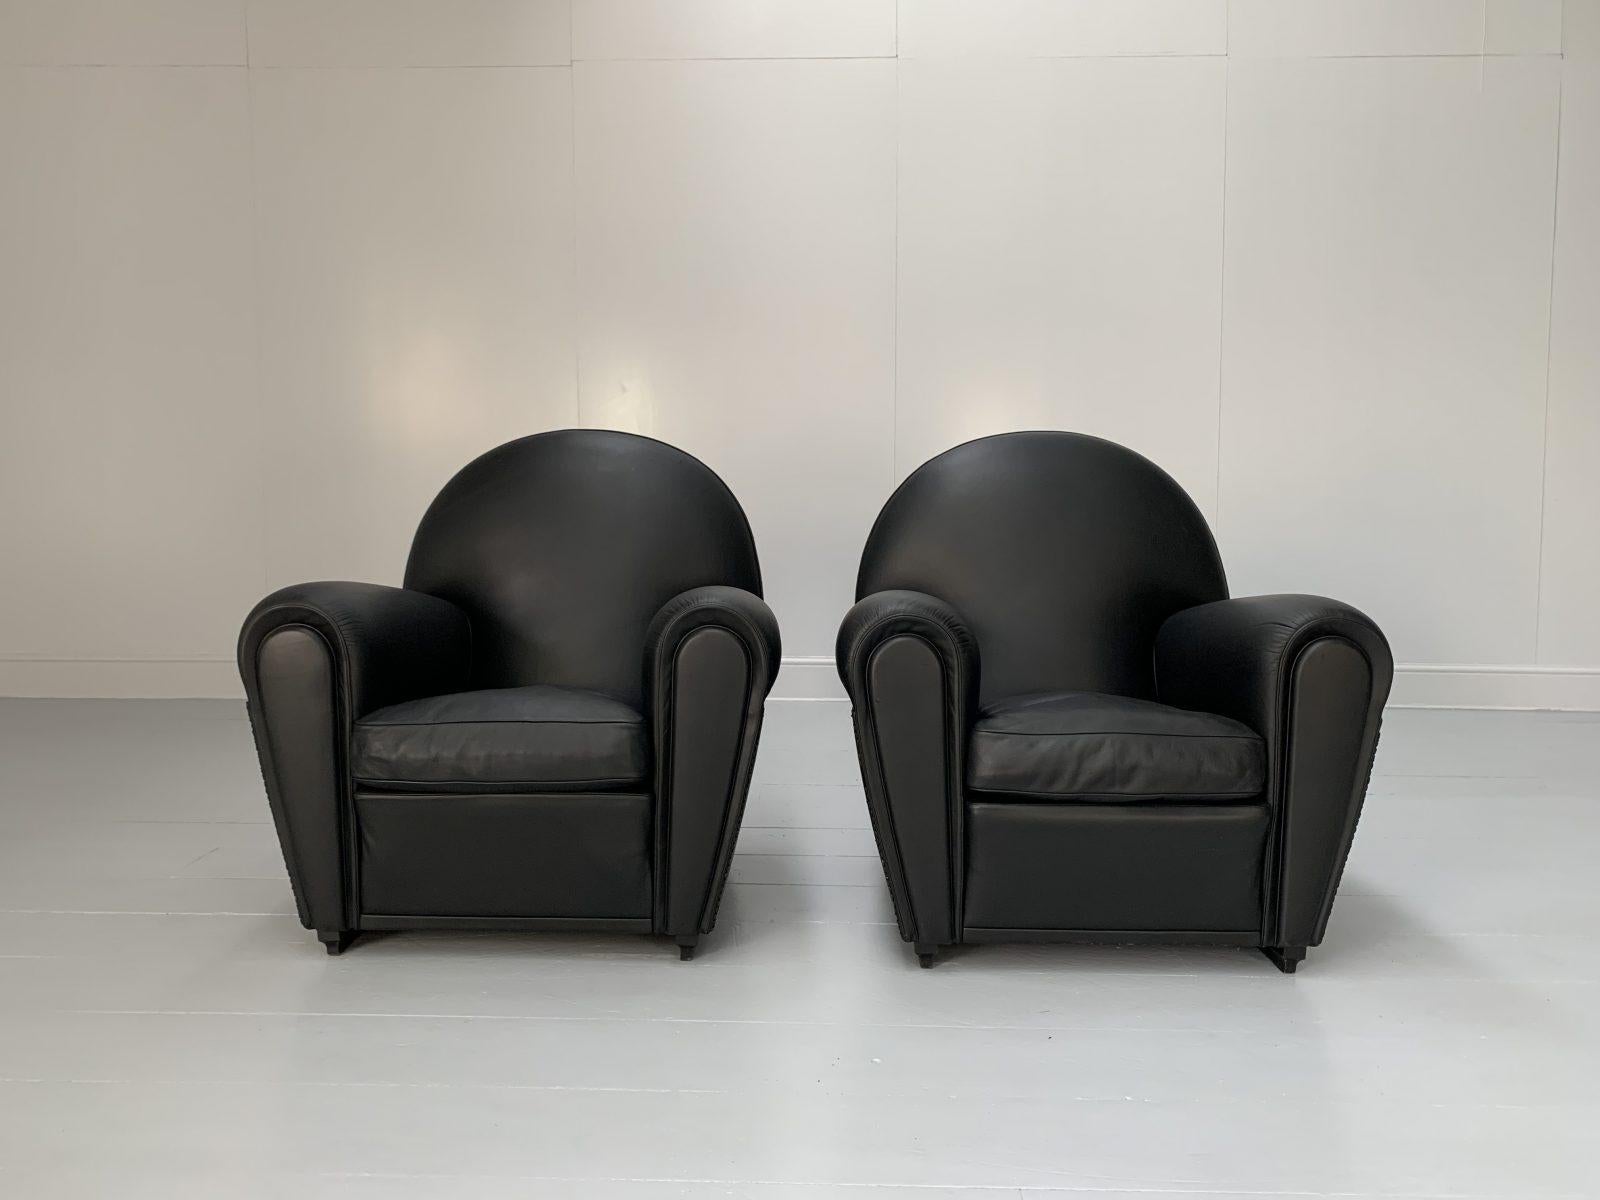 Bonjour les amis, et bienvenue à une nouvelle offre incontournable de Lord Browns Furniture, la première source de canapés et de chaises de qualité au Royaume-Uni.

L'offre porte sur une paire rare et identique de fauteuils 